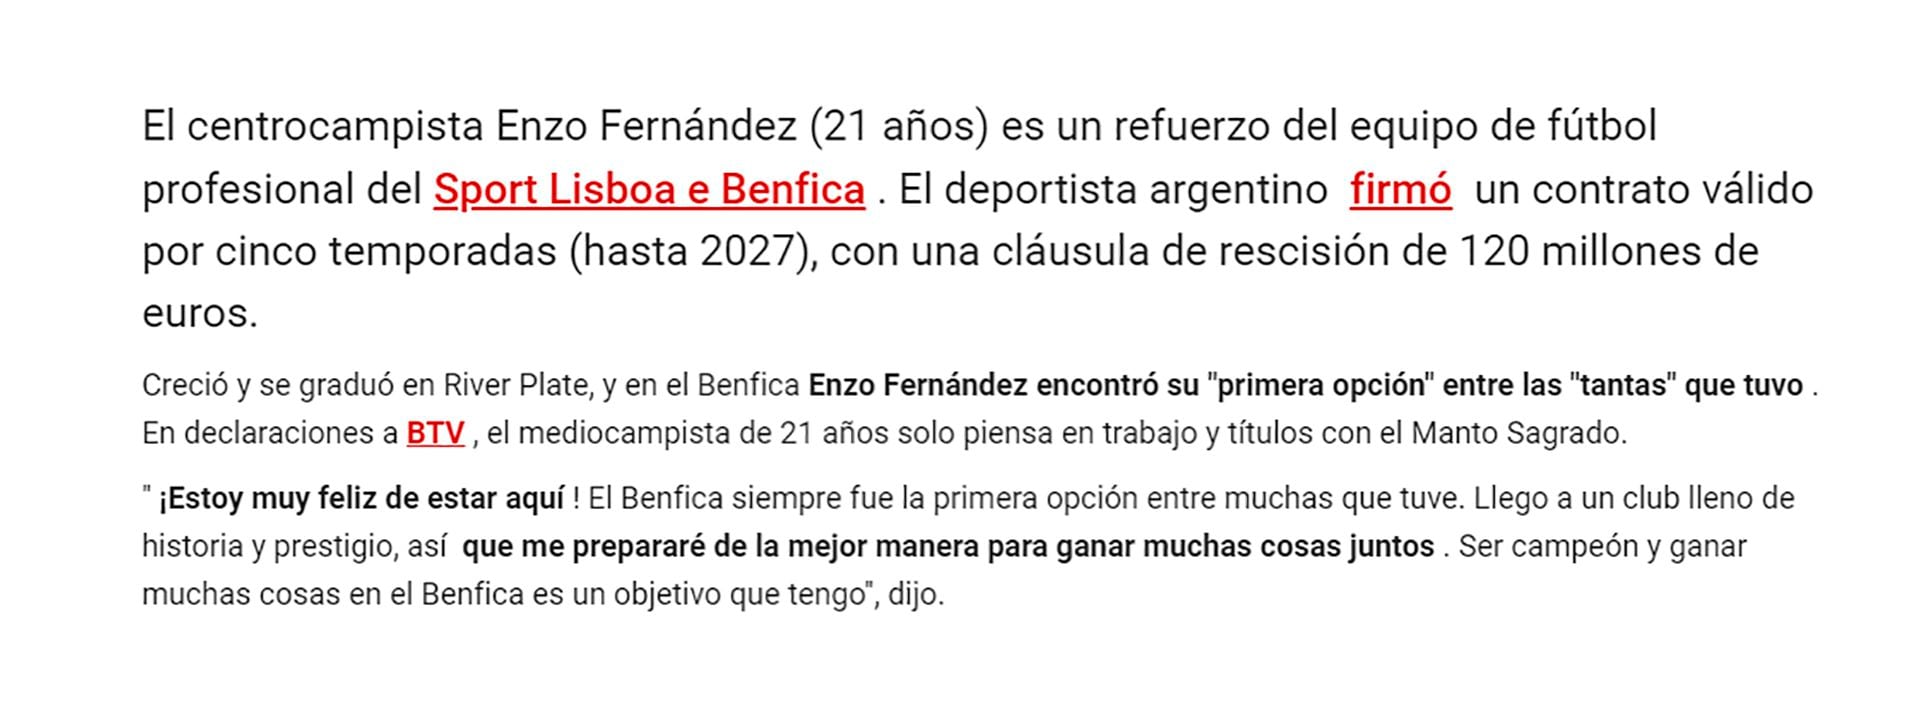 El comunicado del Benfica donde presenta a Enzo Fernández e informa la cláusula de rescisión